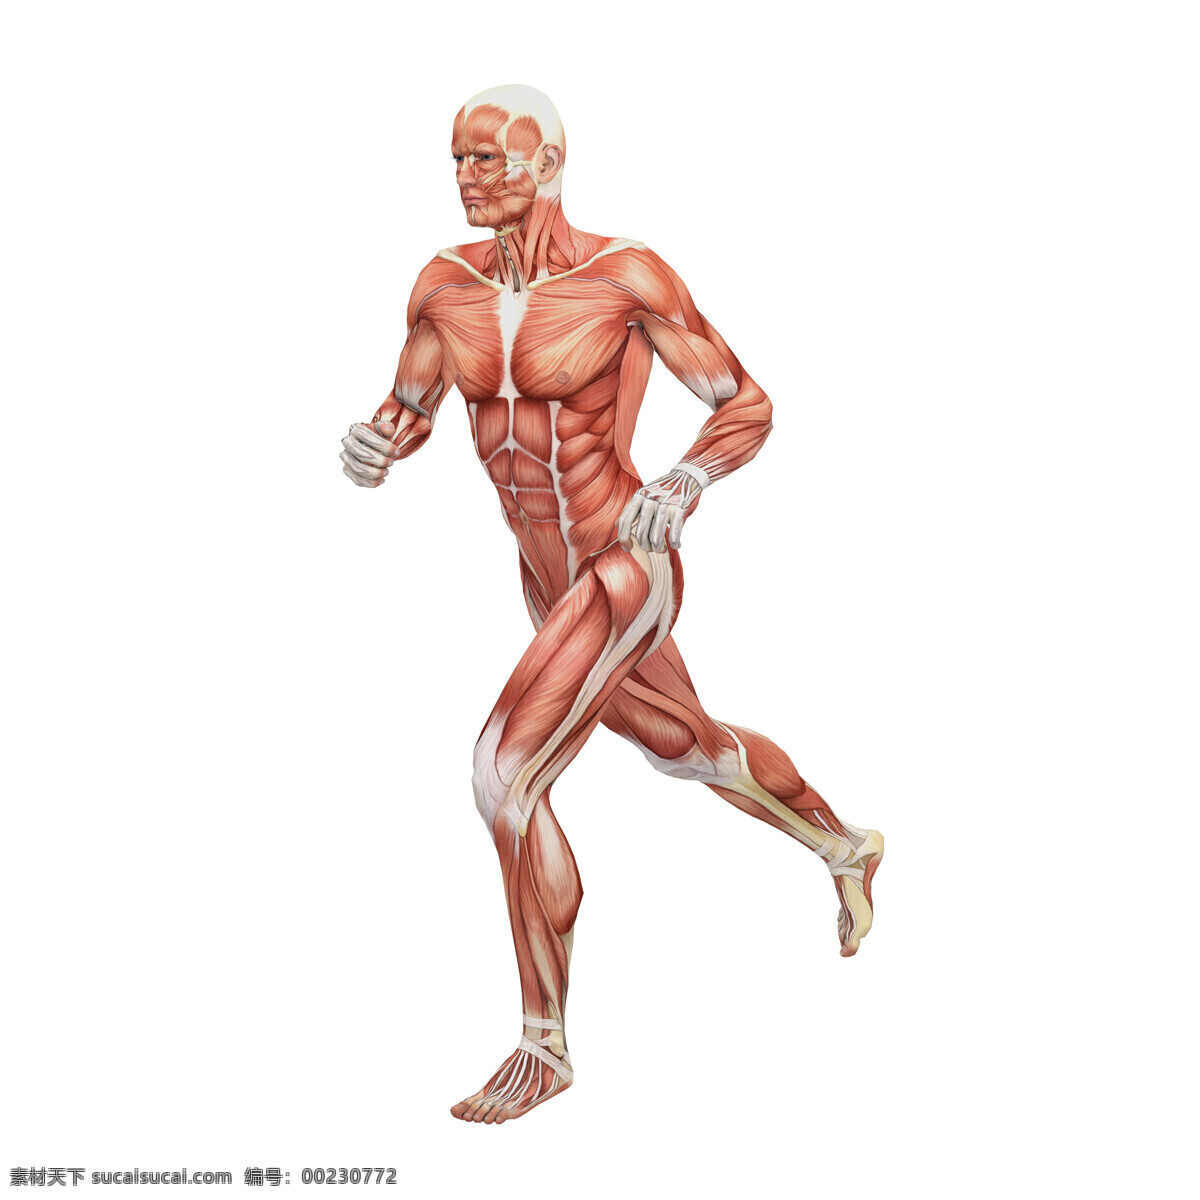 跑步 男性 人体 肌肉 组织 人体解剖学 男性人体 肌肉组织图 医学 医疗护理 人体器官图 人物图片